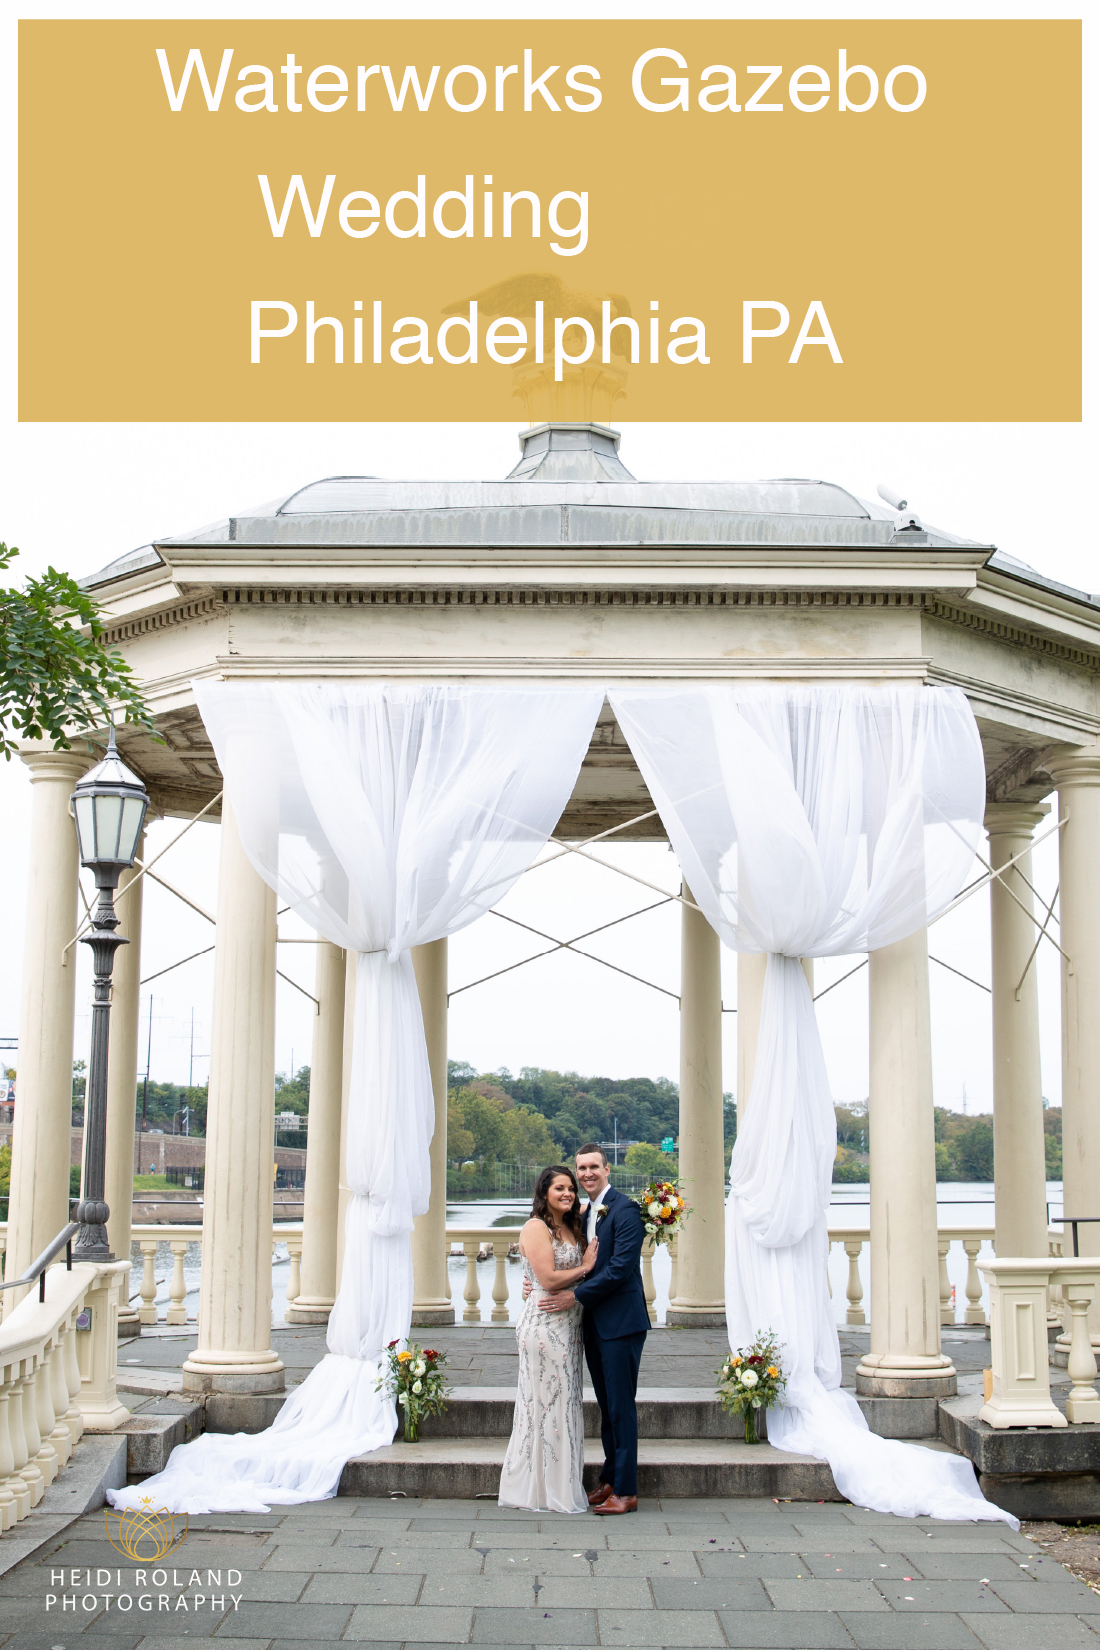 Waterworks Gazebo Wedding Philadelphia PA